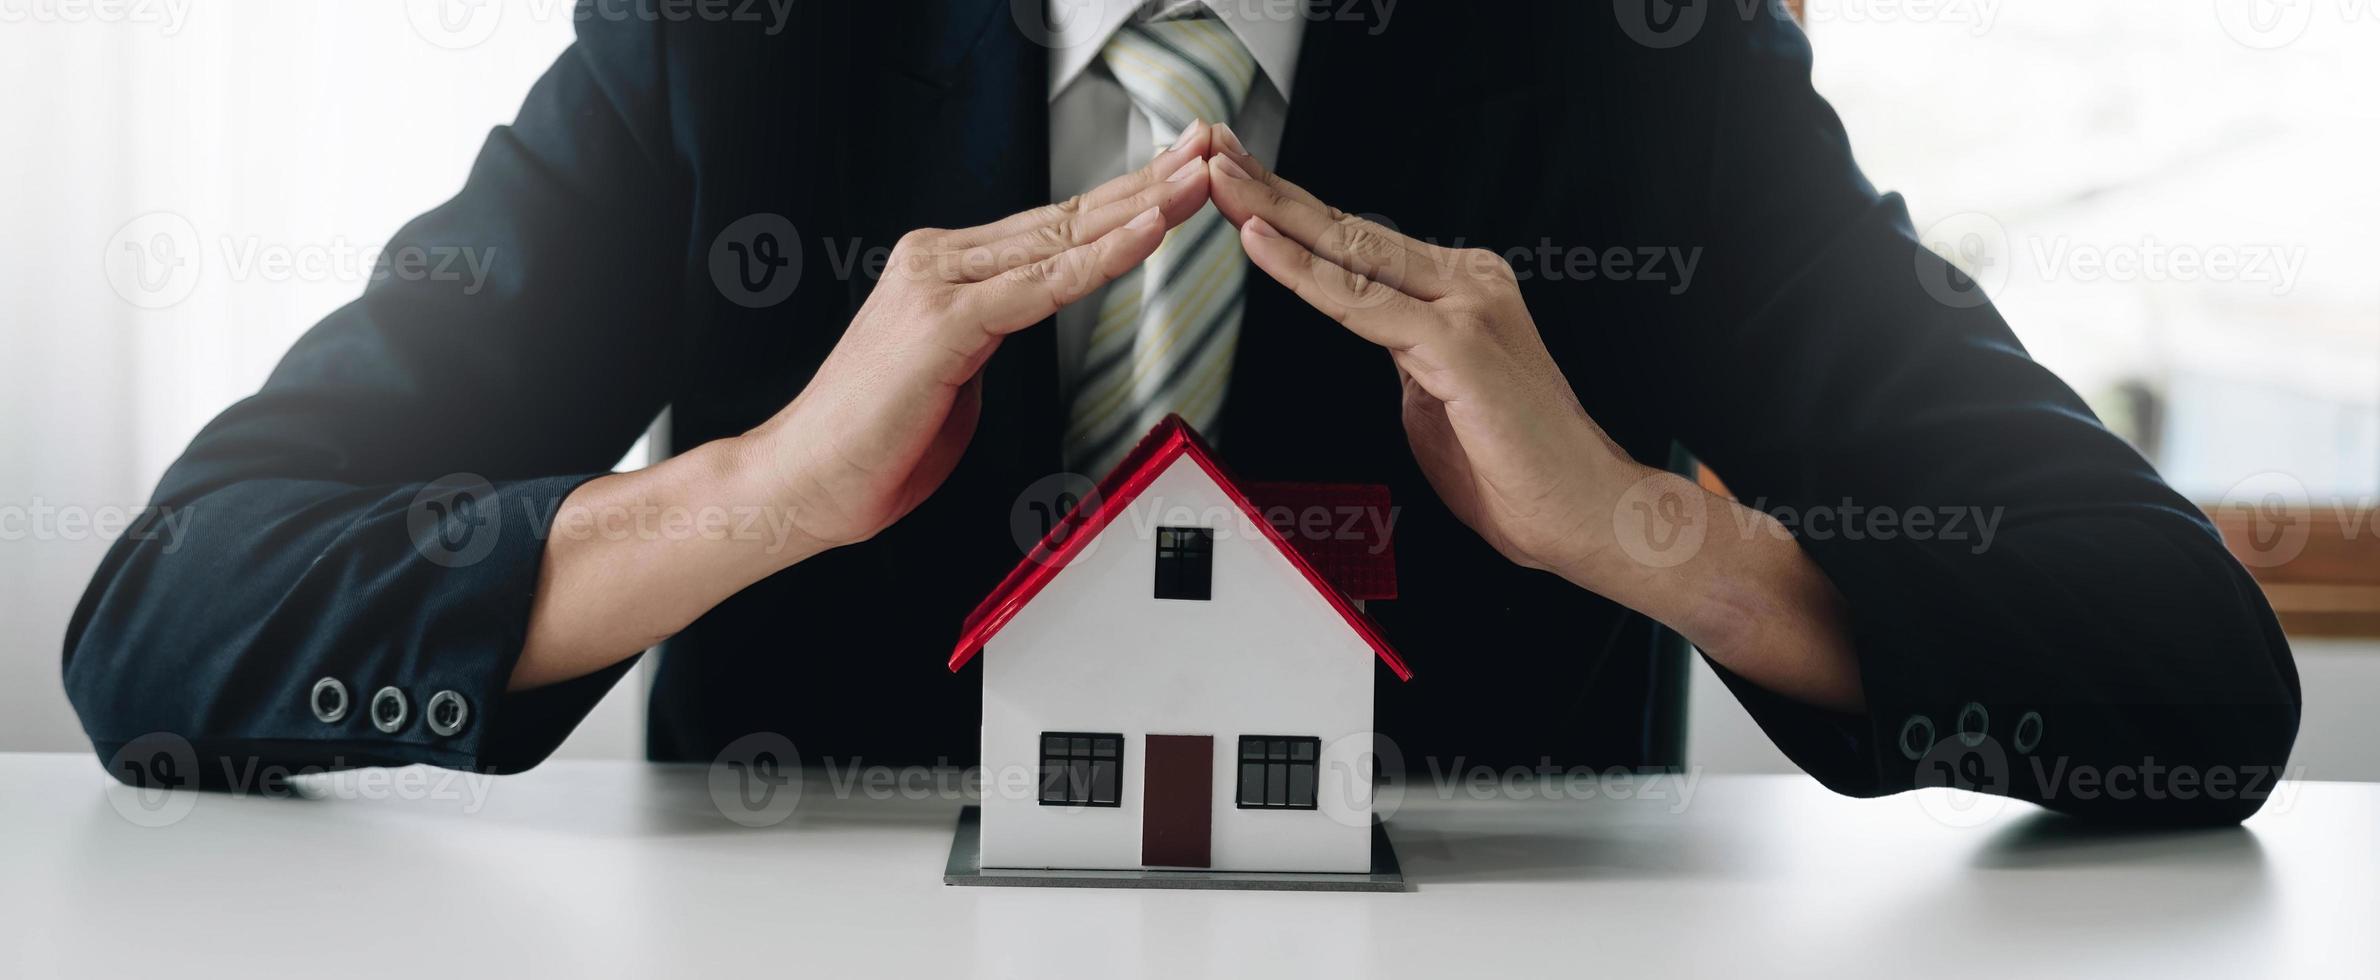 ett litet grått modellhus är ett exempel på ett hem i ett bostadsprojekt, en försäkringssäljare gör en symbolisk hemskyddshandling inom hemförsäkringen. fastighetsleasing koncept. foto